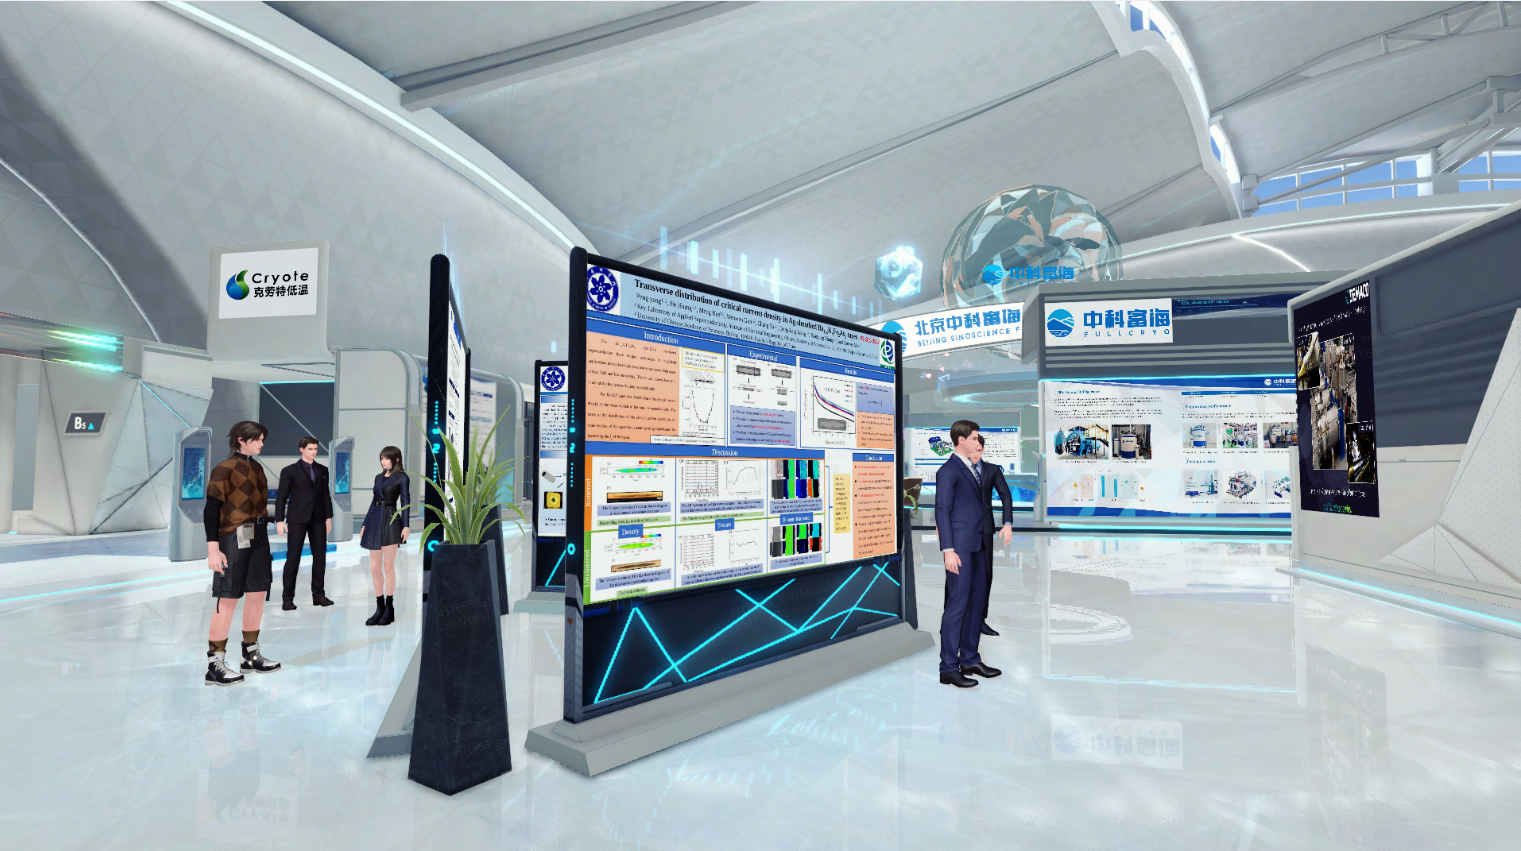 这是一张现代展览会场的图片，人们正在查看展板，场地设计现代化，以白色和蓝色为主色调，充满科技感。